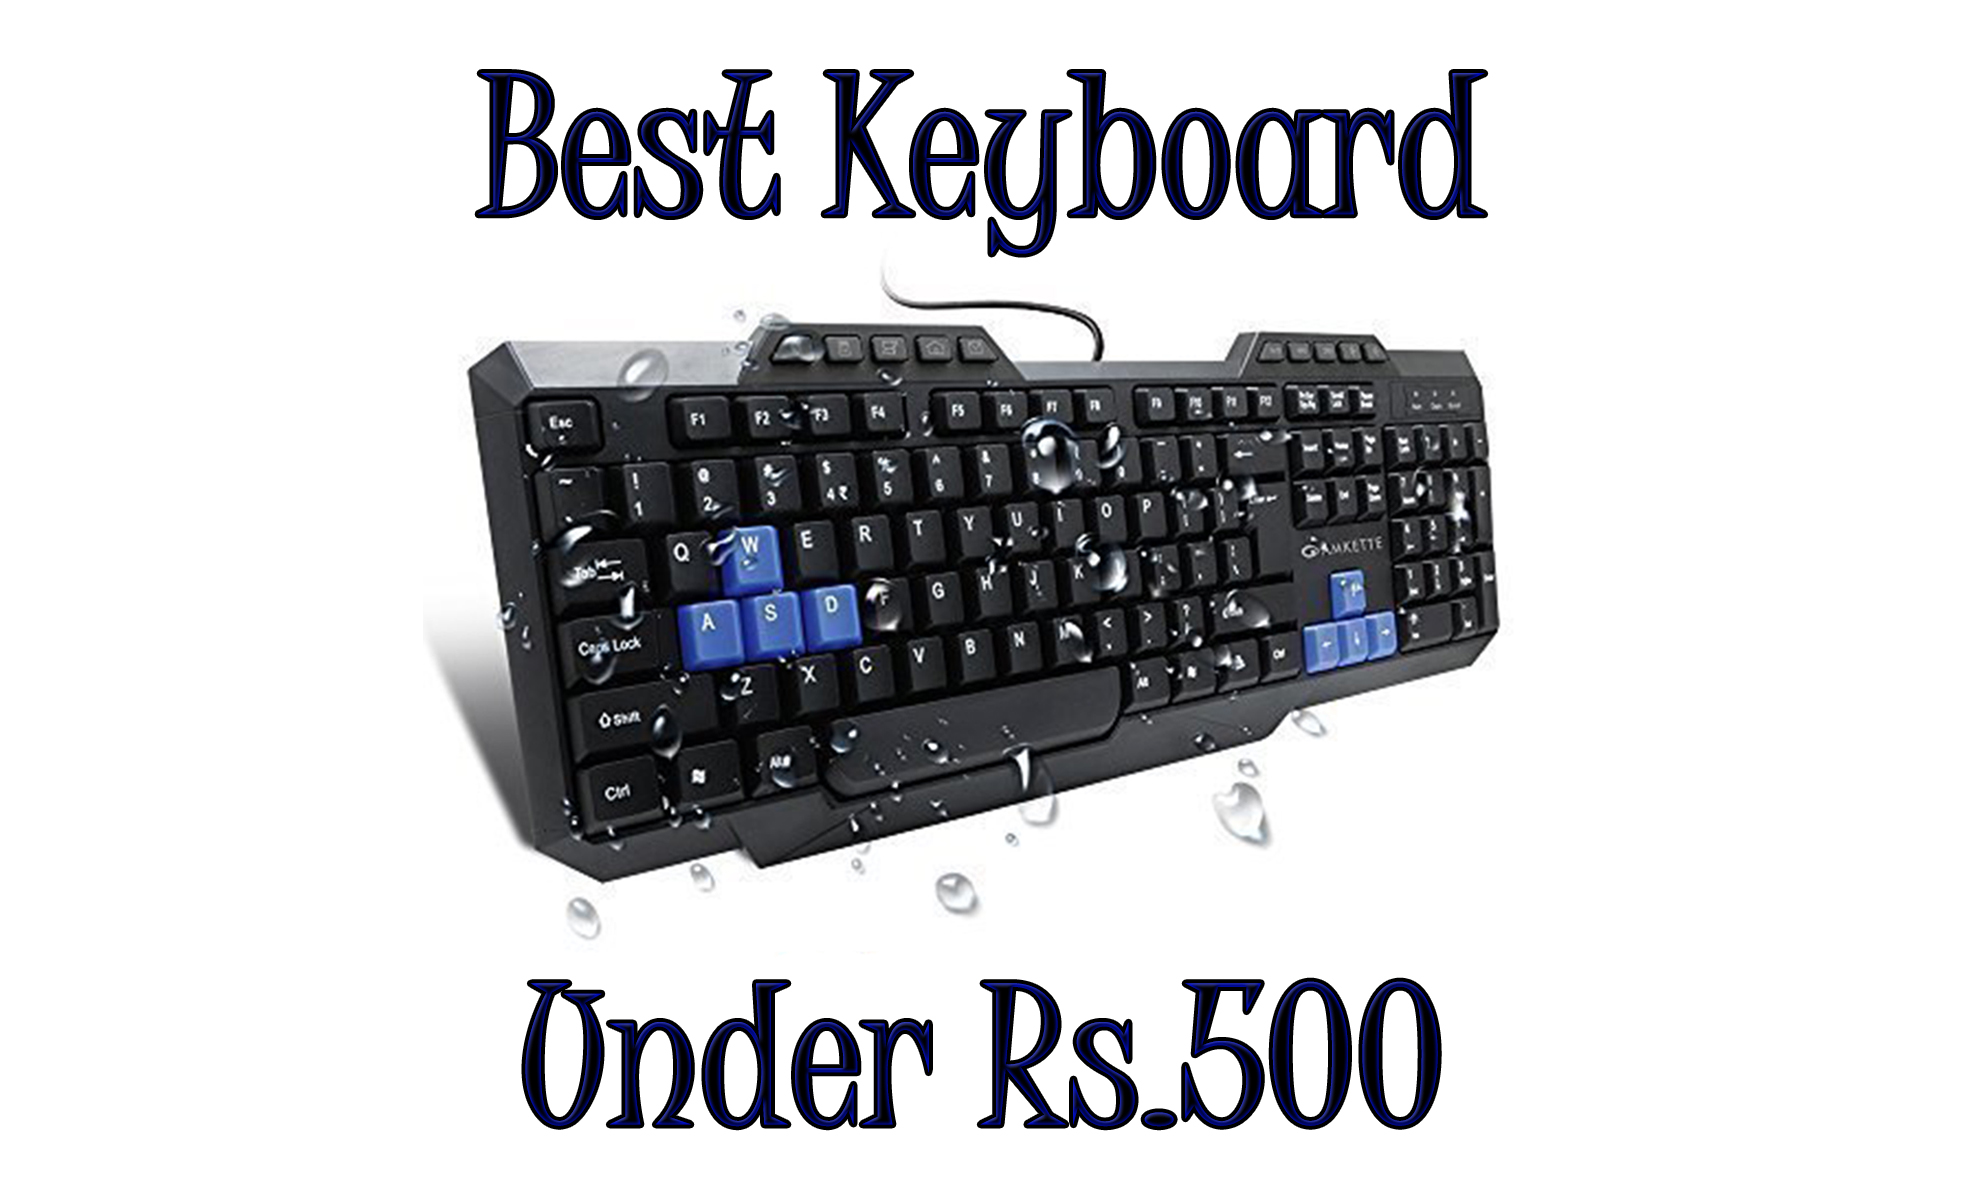 Best Keyboard Under 500